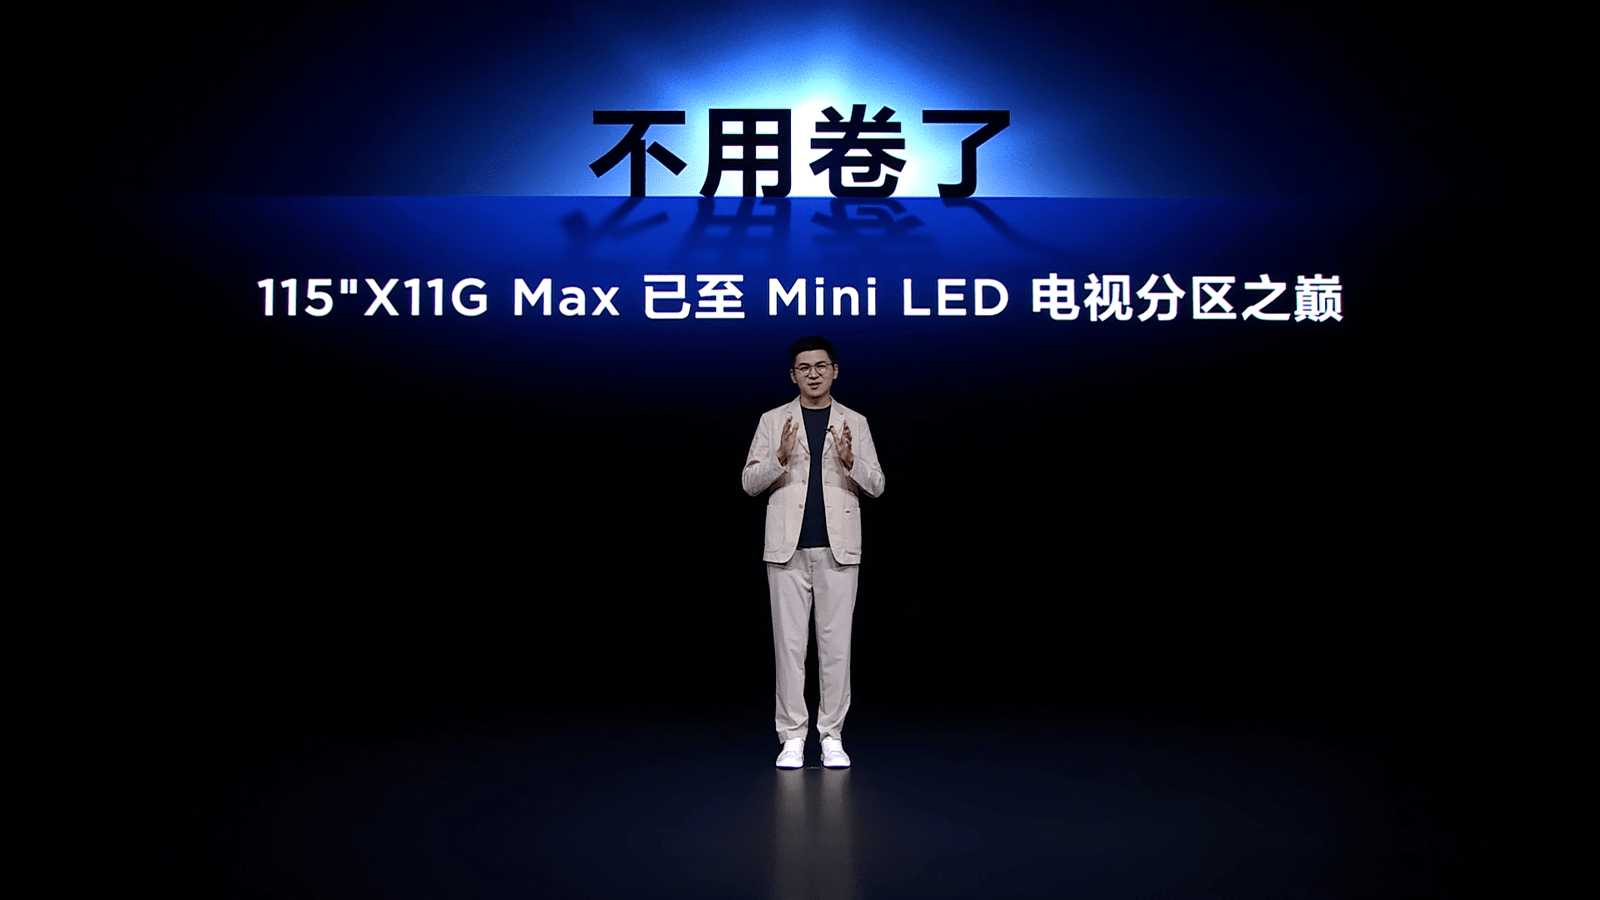 TCL推出全新115吋X11G Max Mini LED电视，继续引领超大屏电视市场